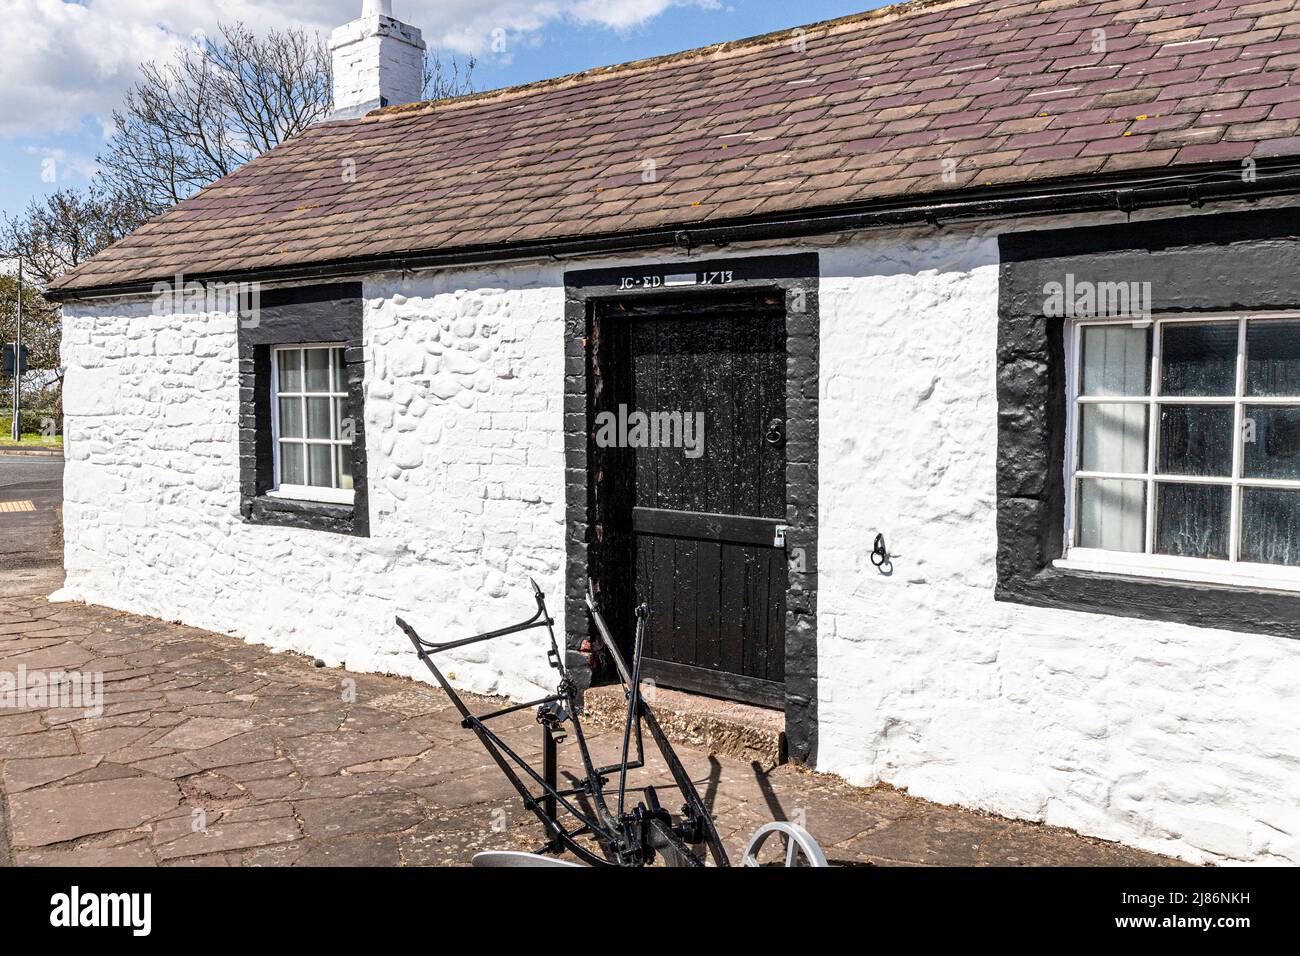 Il famoso Old Blacksmiths Shop, sede del matrimonio con l'incudine, a Gretna Green, Dumfries & Galloway, Scozia, Regno Unito Foto Stock